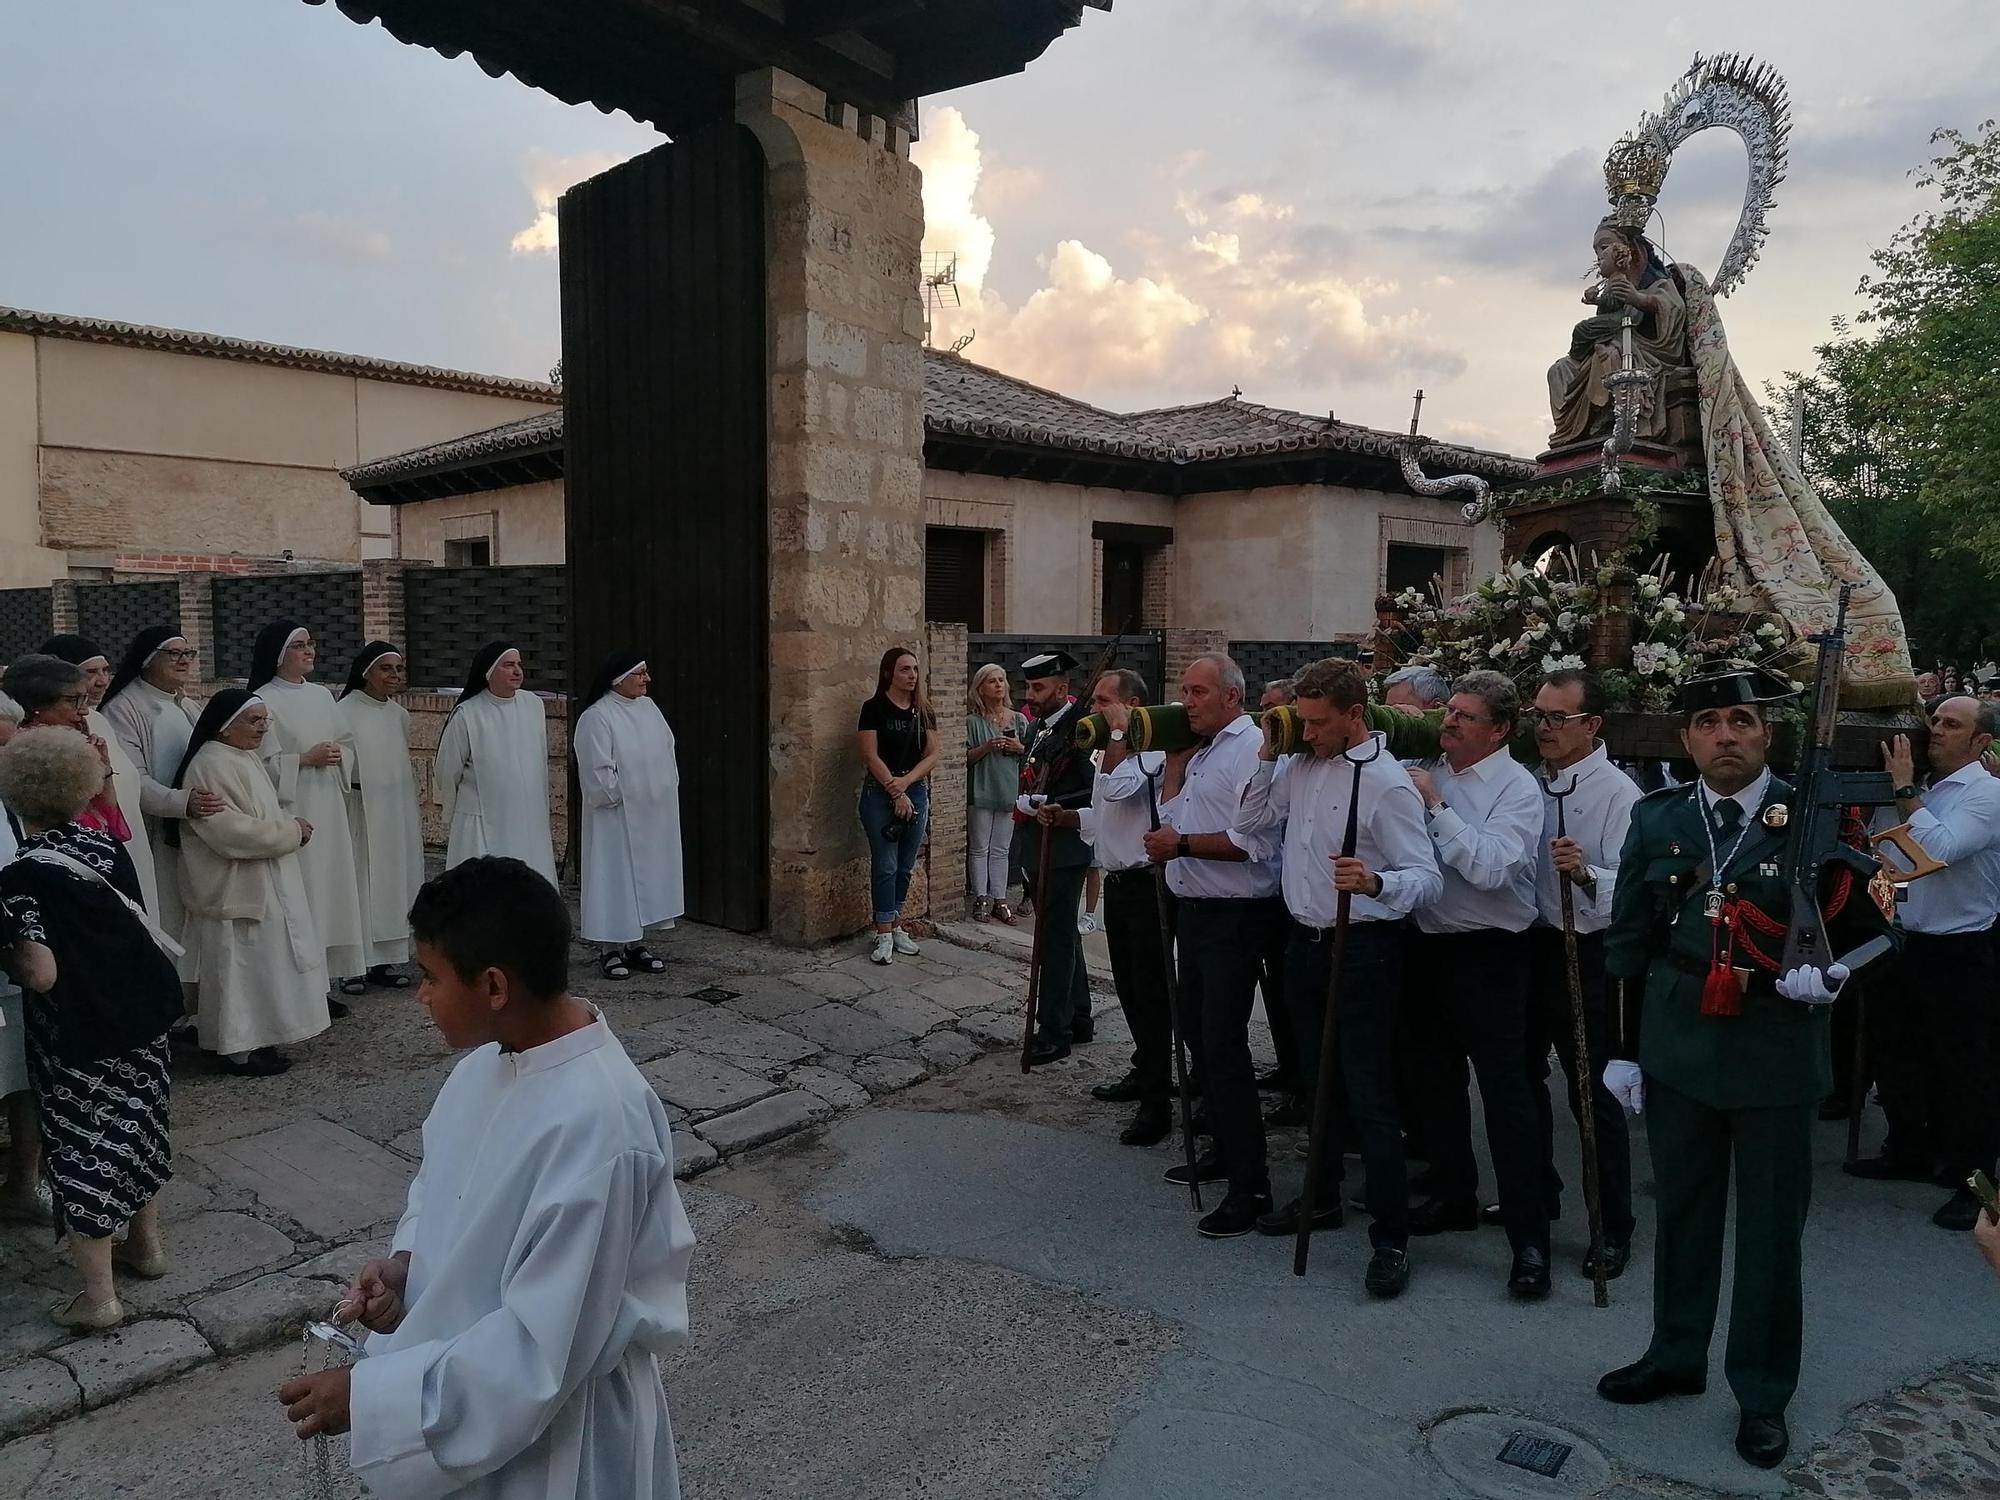 GALERÍA | Toro arropa a su patrona en una procesión histórica